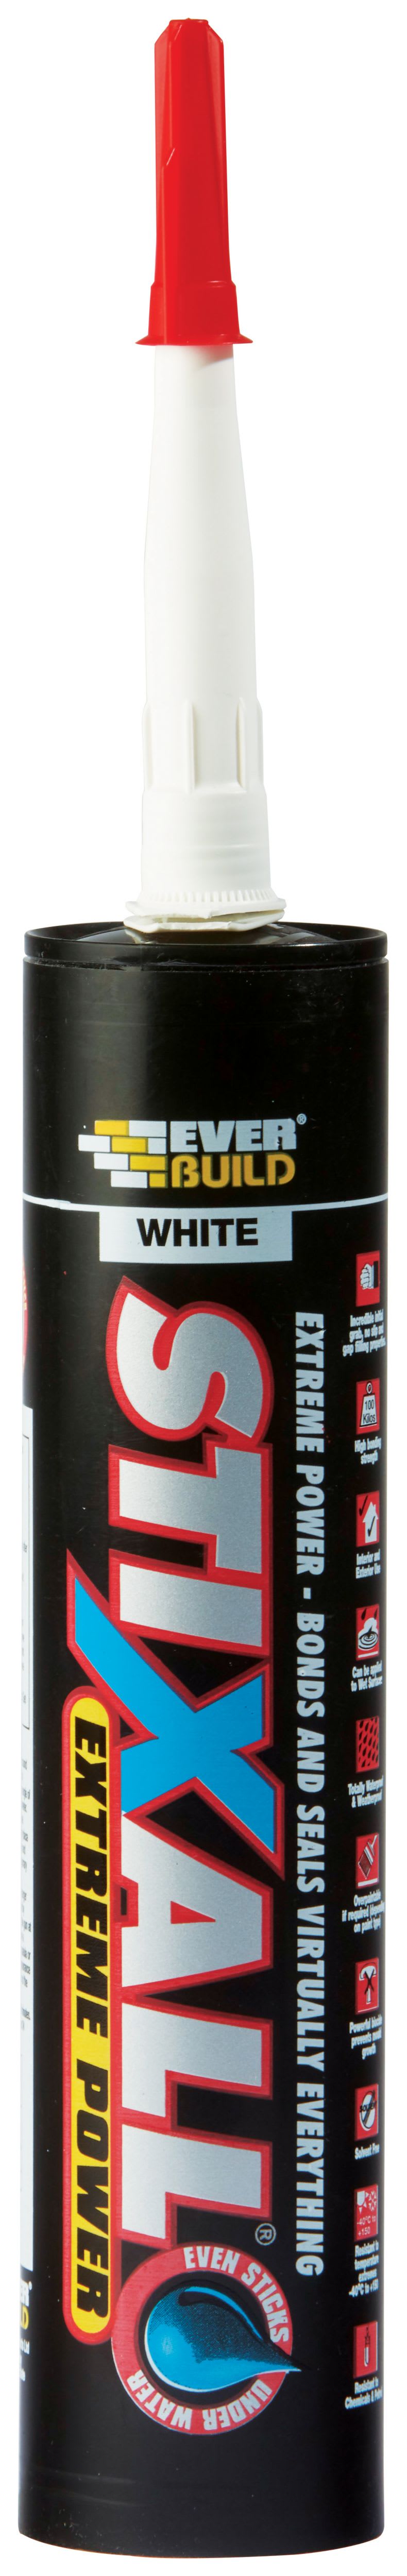 Everbuild White Stixall Extreme Power Sealant & Adhesive